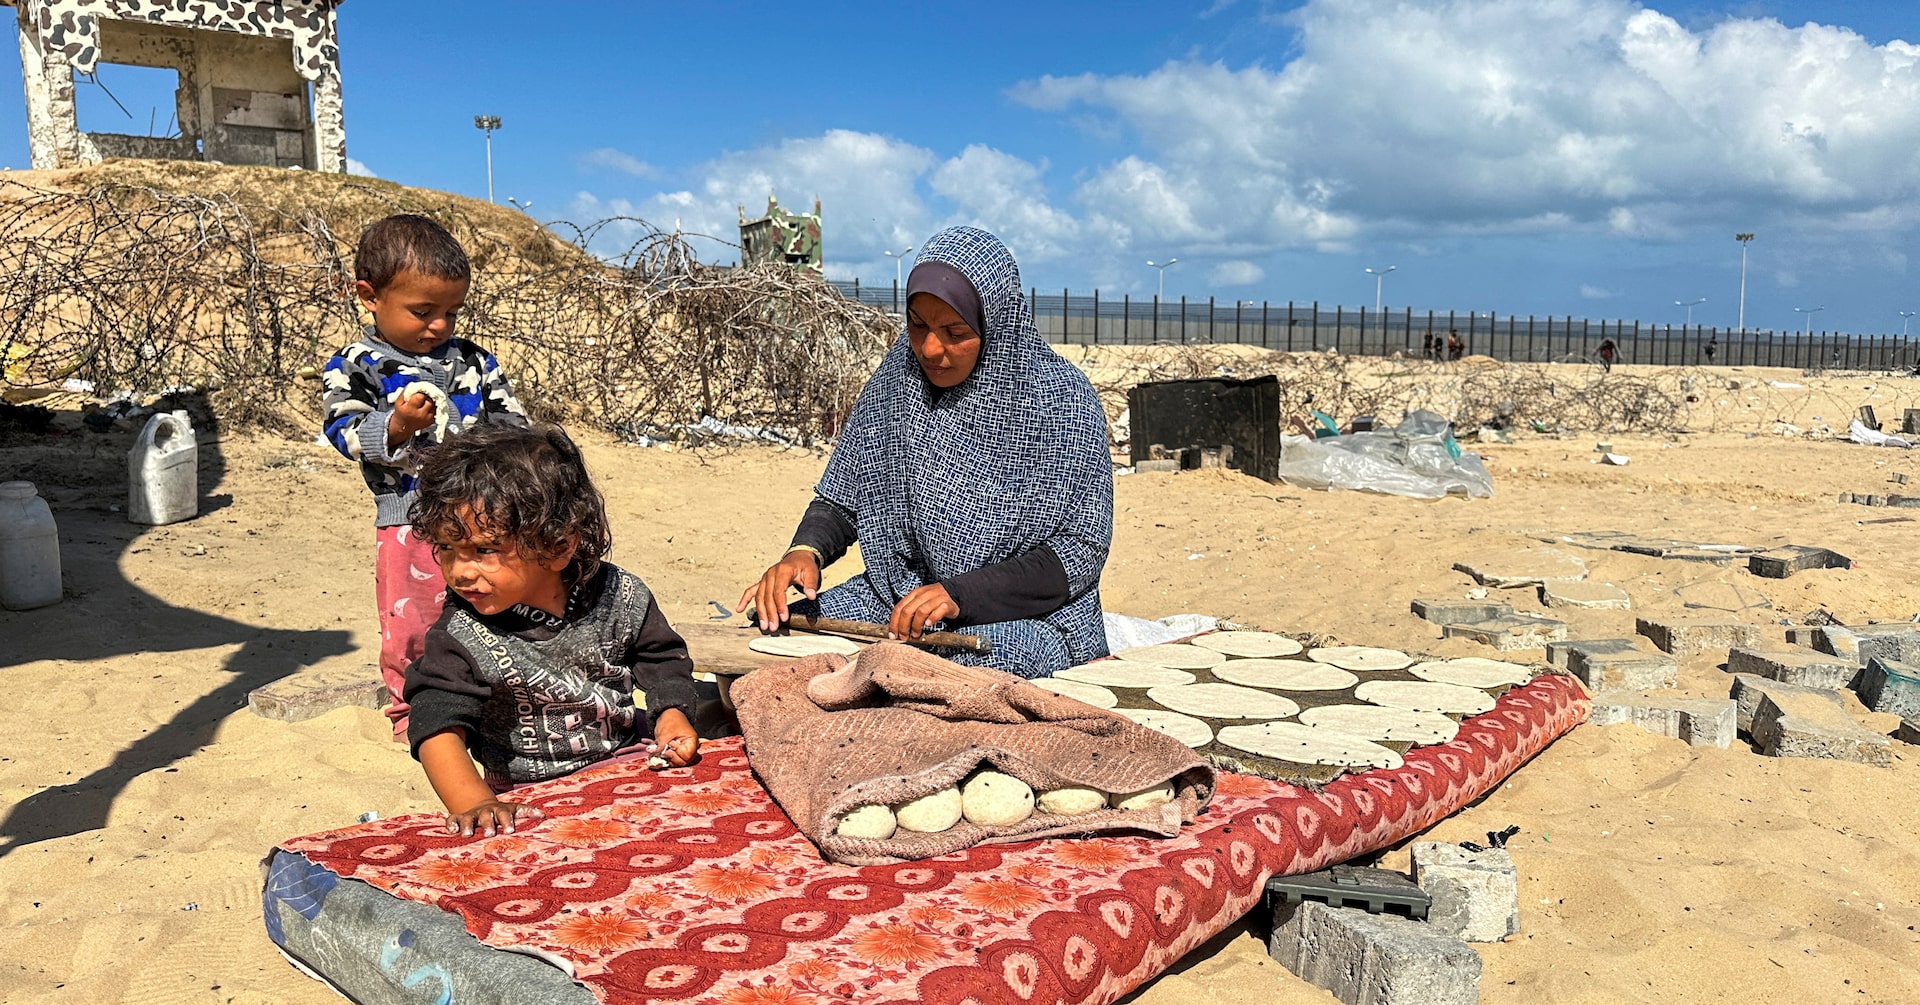 ガザ住民の多数が「飢餓のような状況」に＝ＷＨＯ事務局長